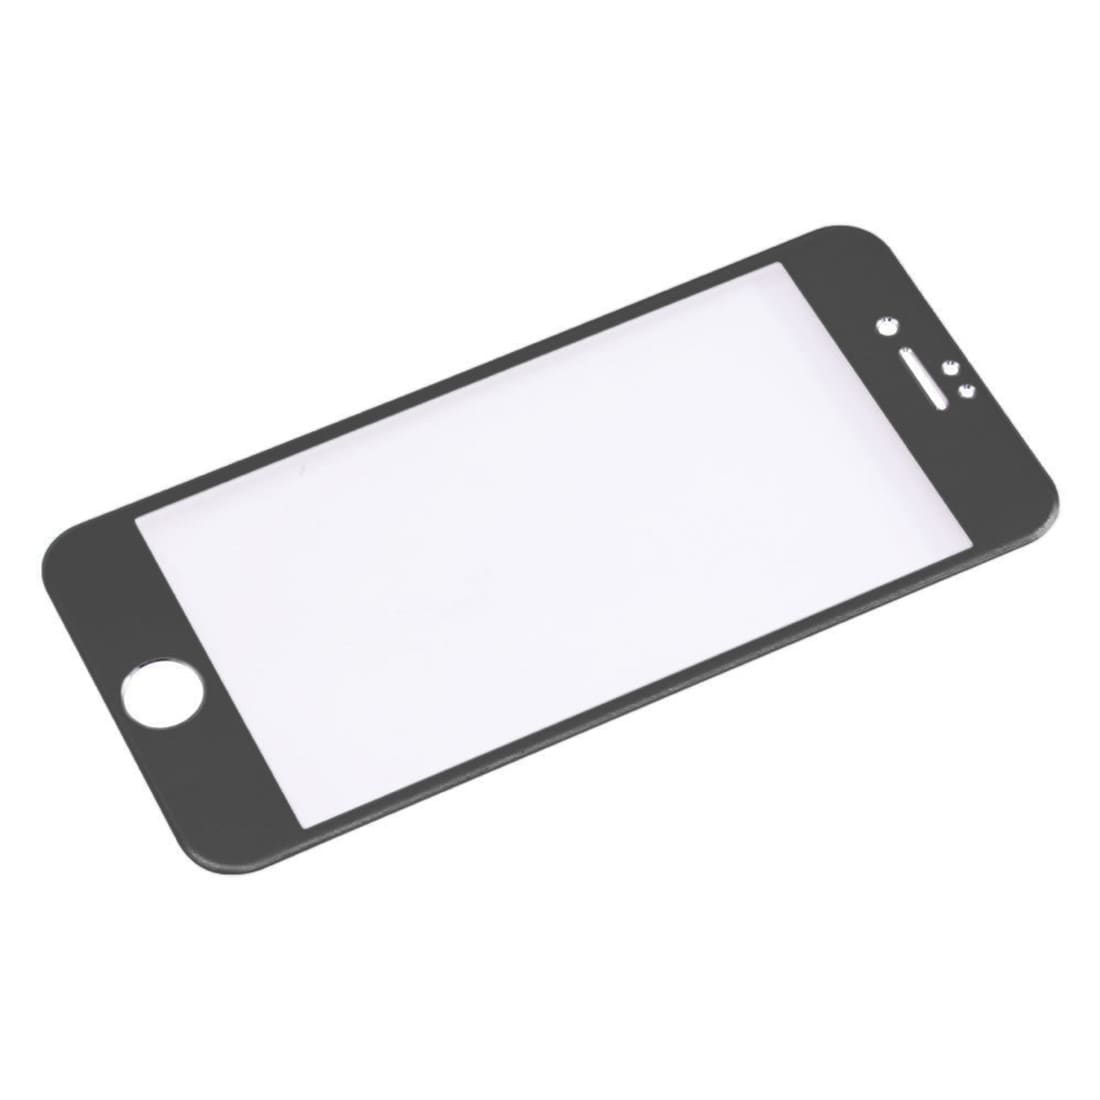 Bøyd herdet fullskjermbeskyttelse av glass til iPhone 8 Plus / 7 Plus - Svart